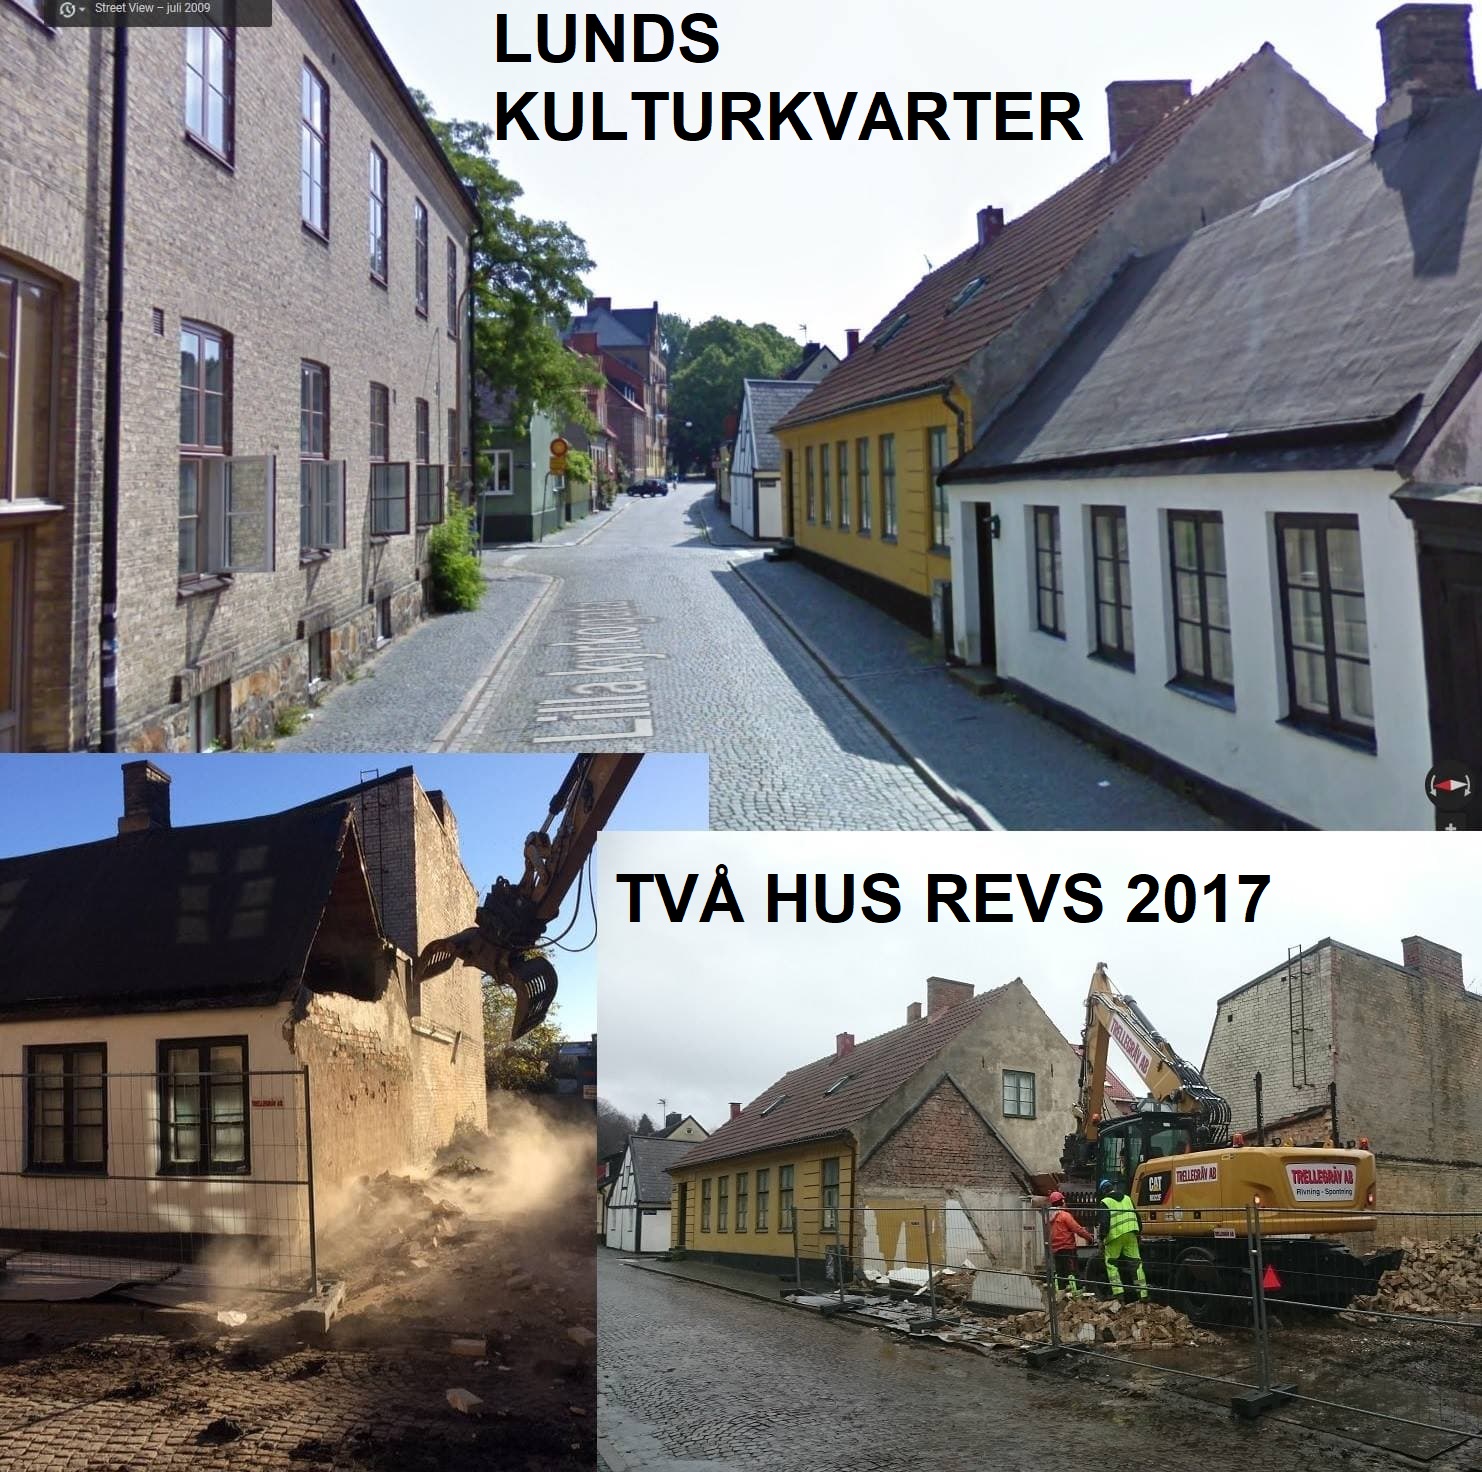 Två hus revs i Lunds kulturkvadrant år 2017.